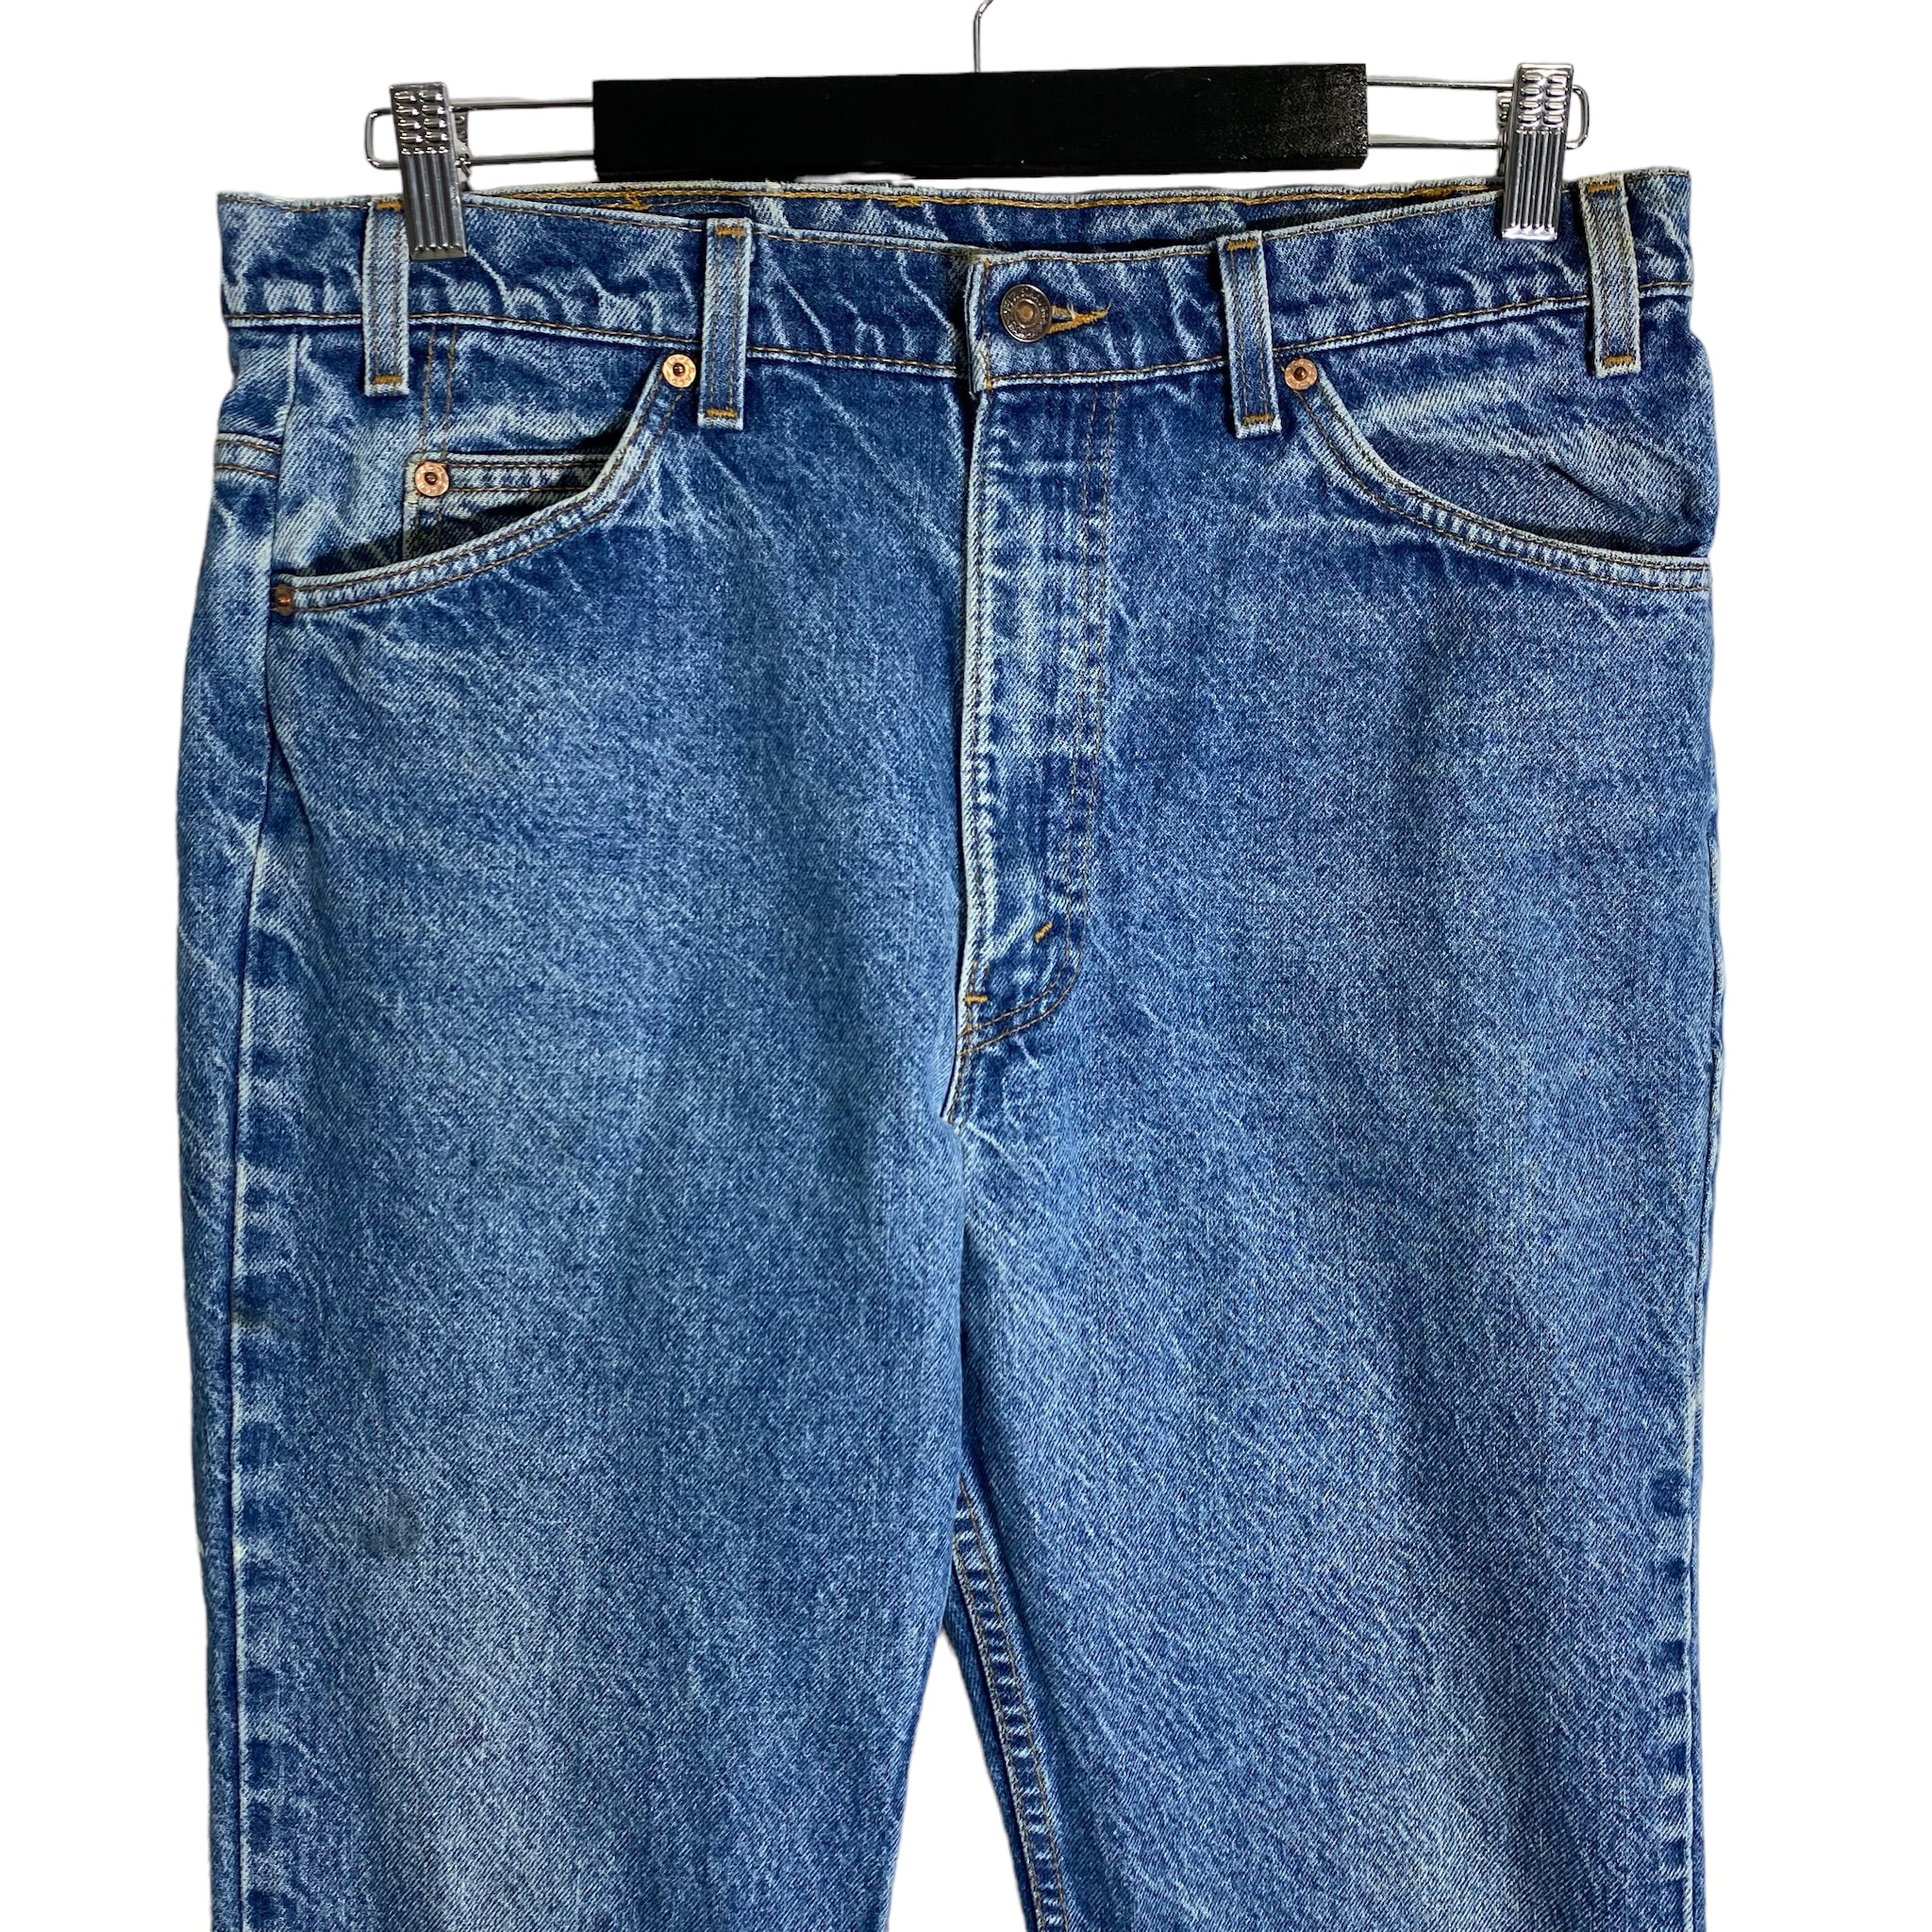 Vintage Levi’s 517 Orange Tab Jeans